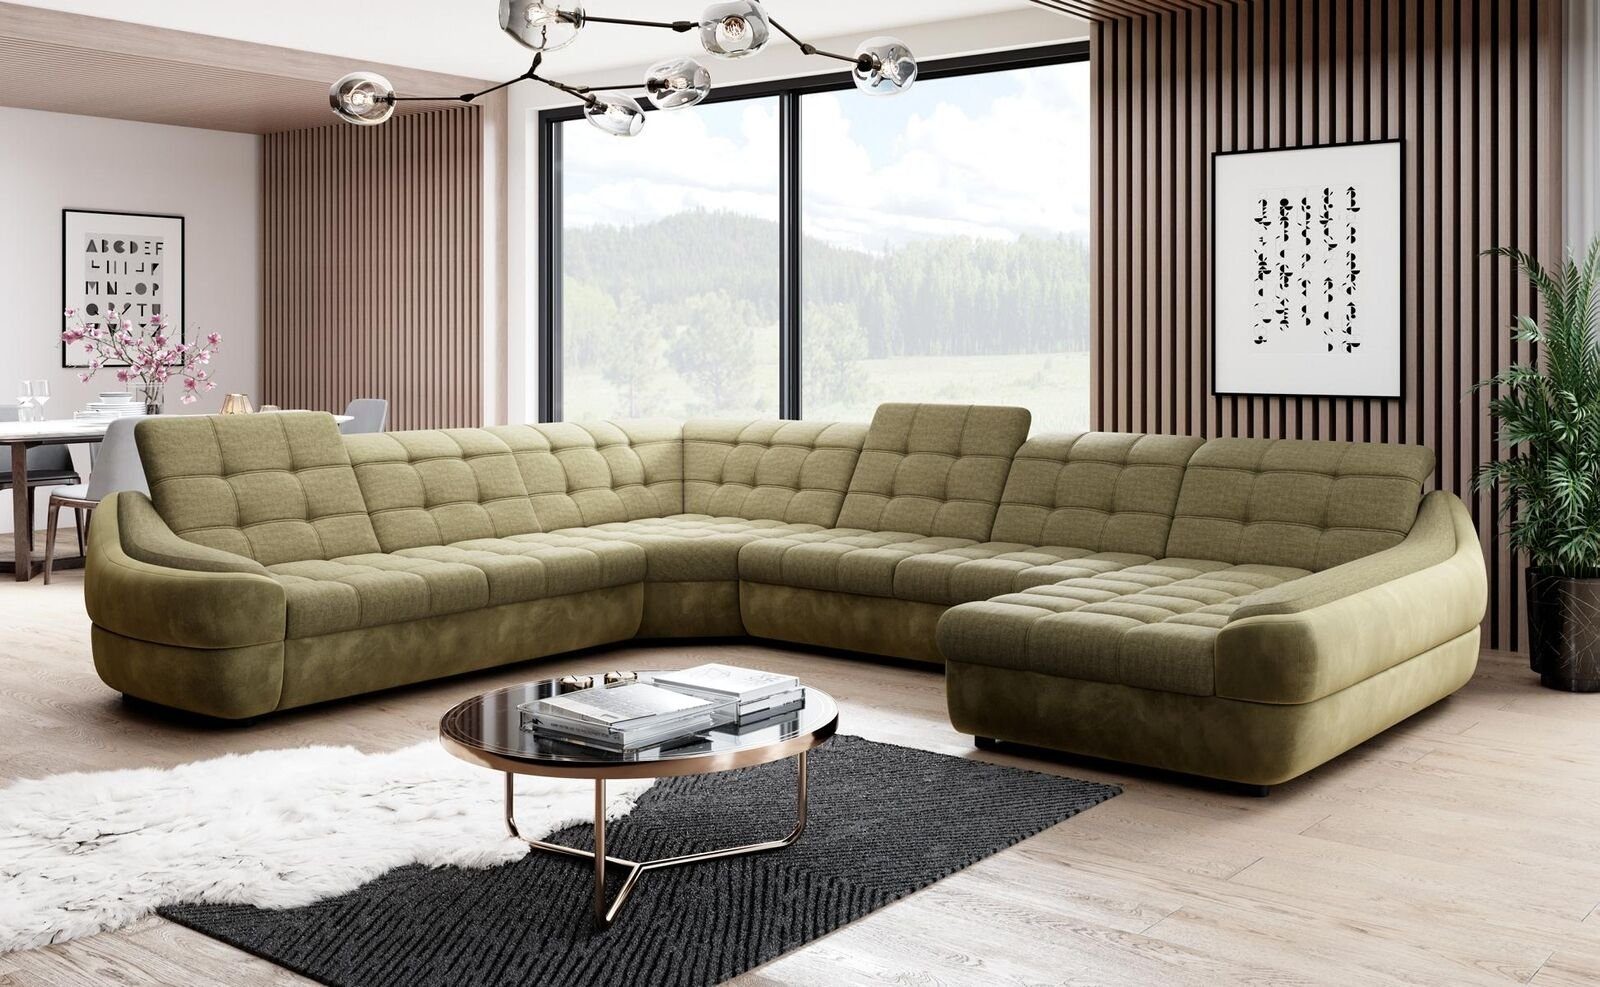 JVmoebel Ecksofa, Polster Garnitur Couch Sofa Design Ecksofa Wohnlandschaft Neu Textil